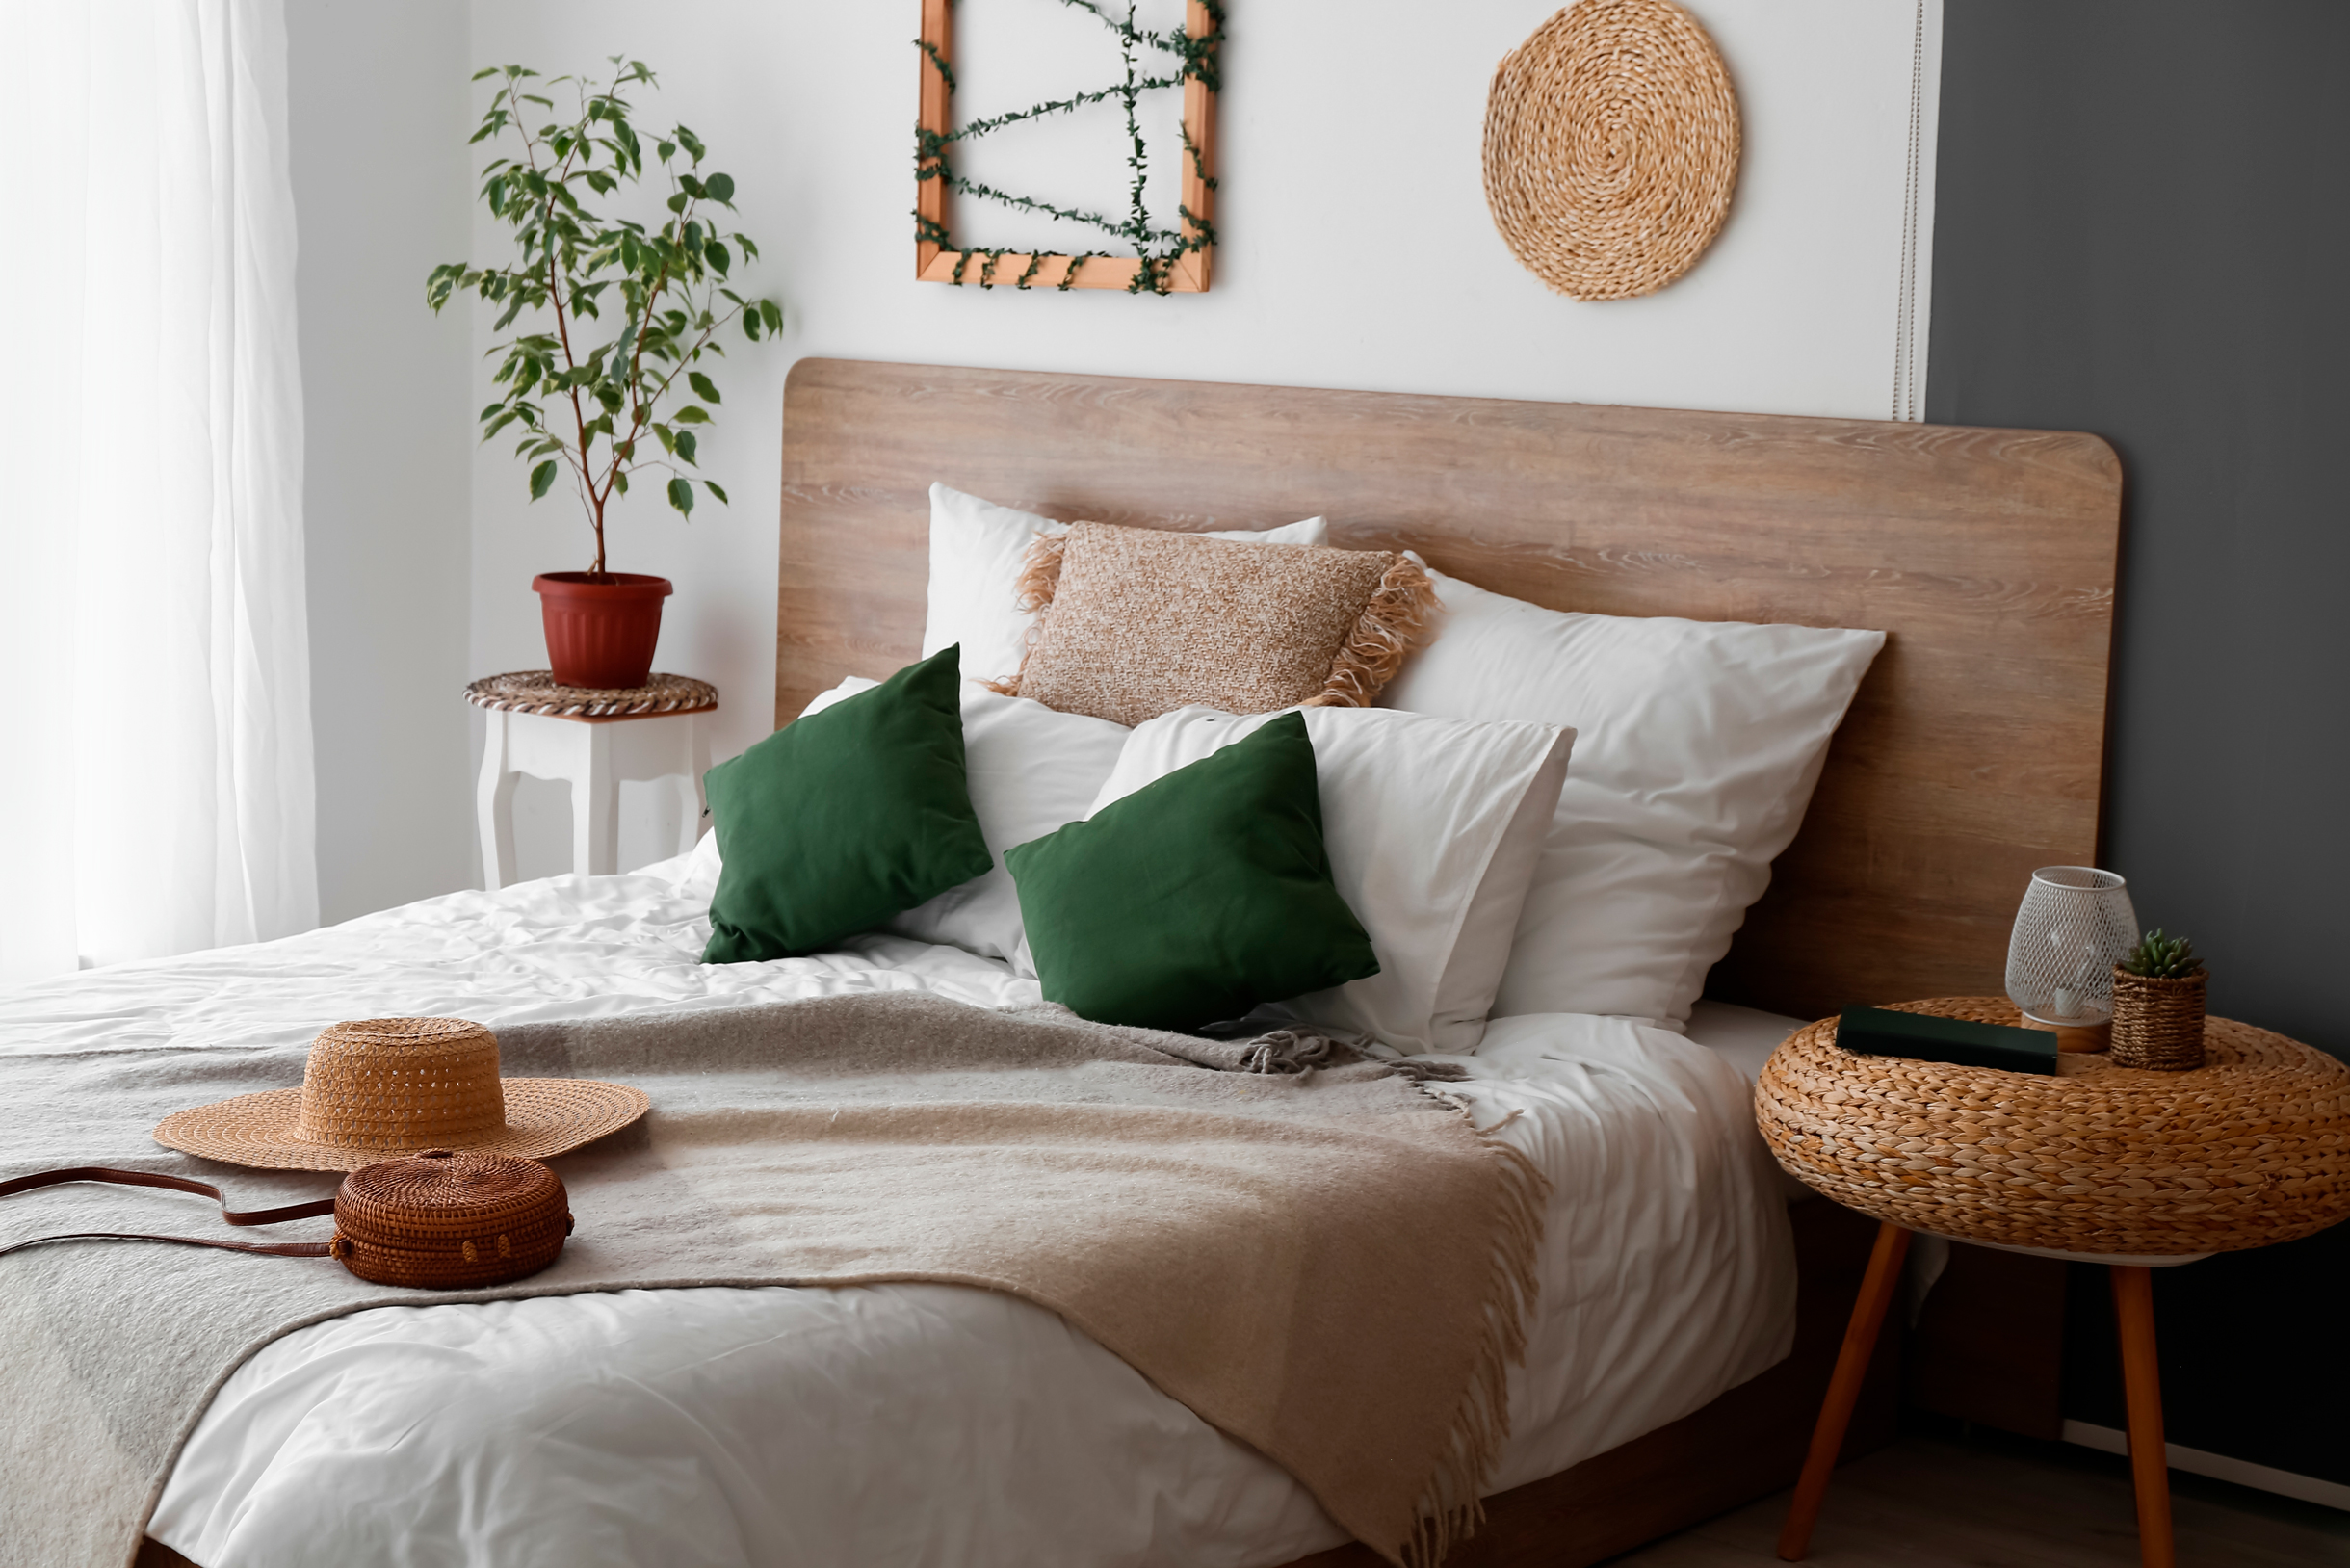 Не бойтесь положить на кровать одновременно много подушек, покрывало и плед — это только добавит уюта. Главное, чтобы яркими были только одна⁠-⁠две детали. Фотография: Pixel⁠-⁠Shot / Shutterstock / FOTODOM